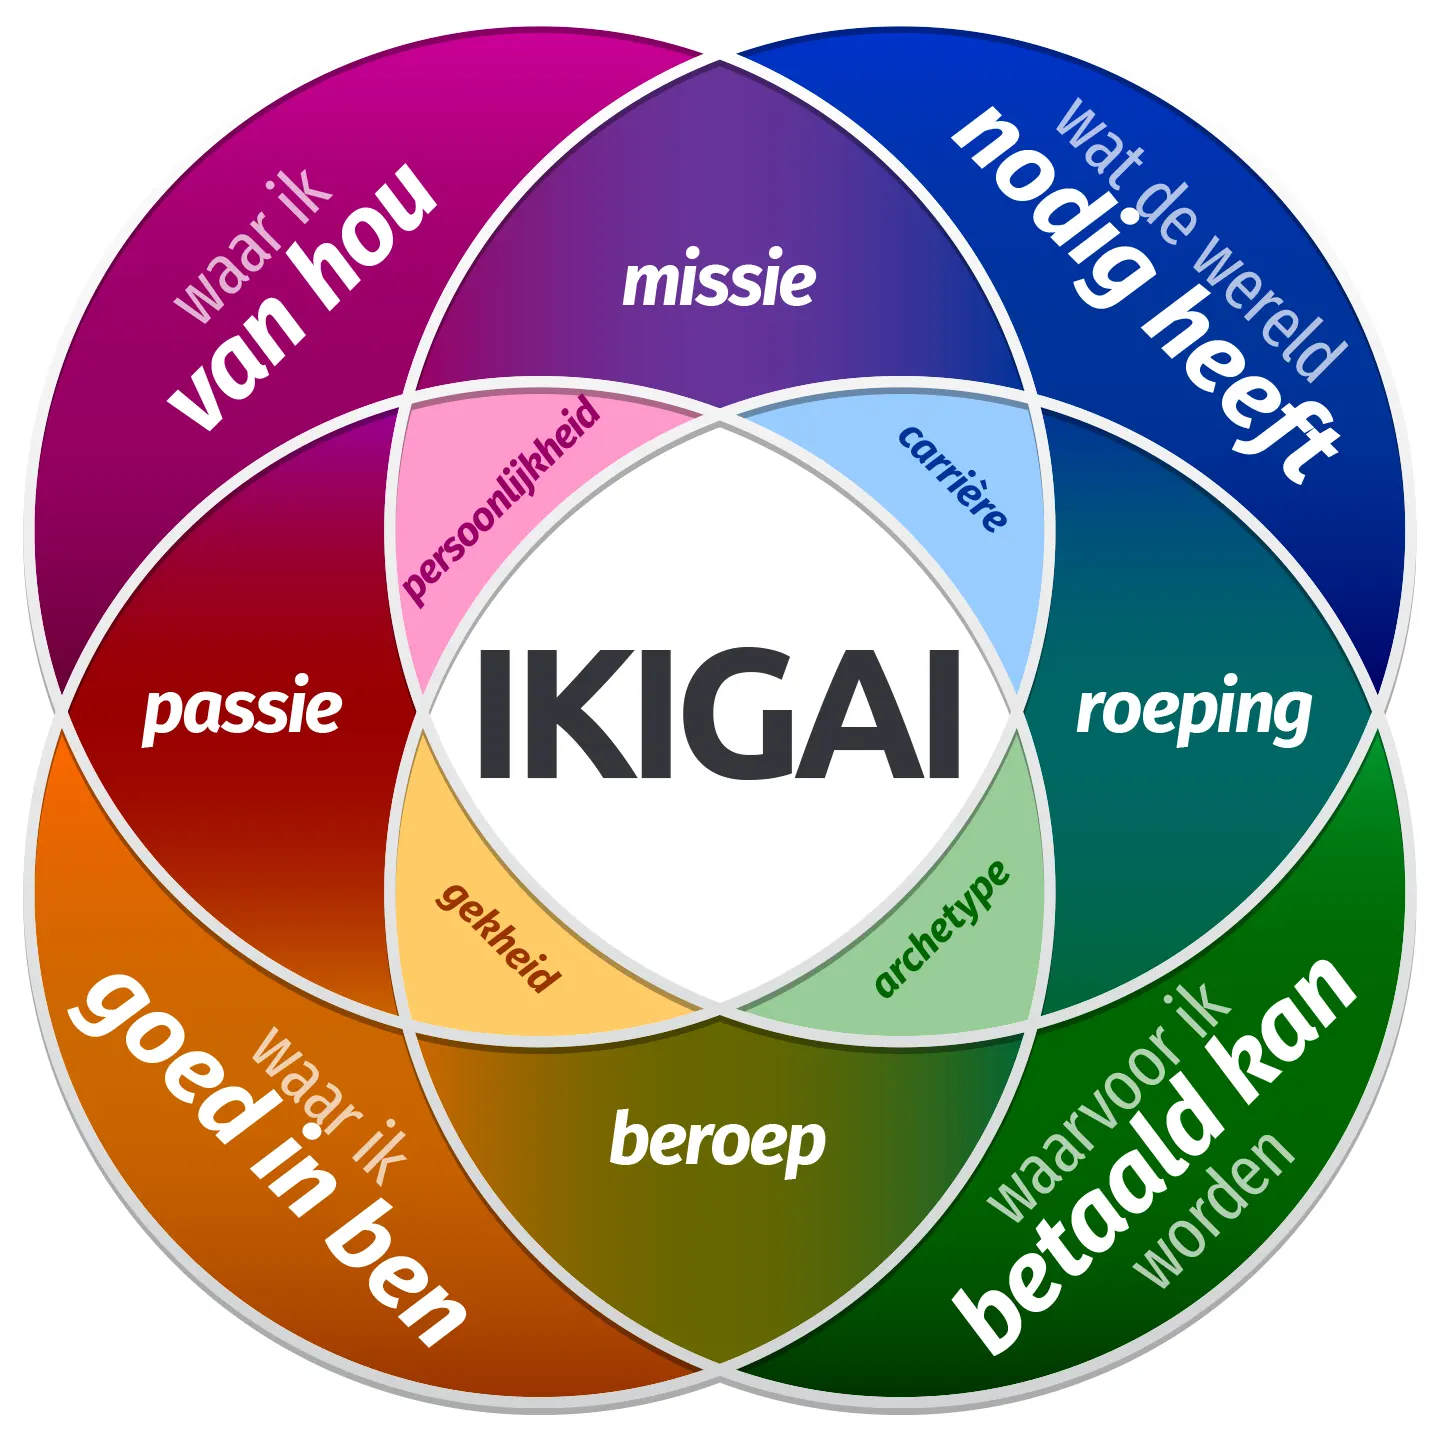 ikigai betekent in het nederlands